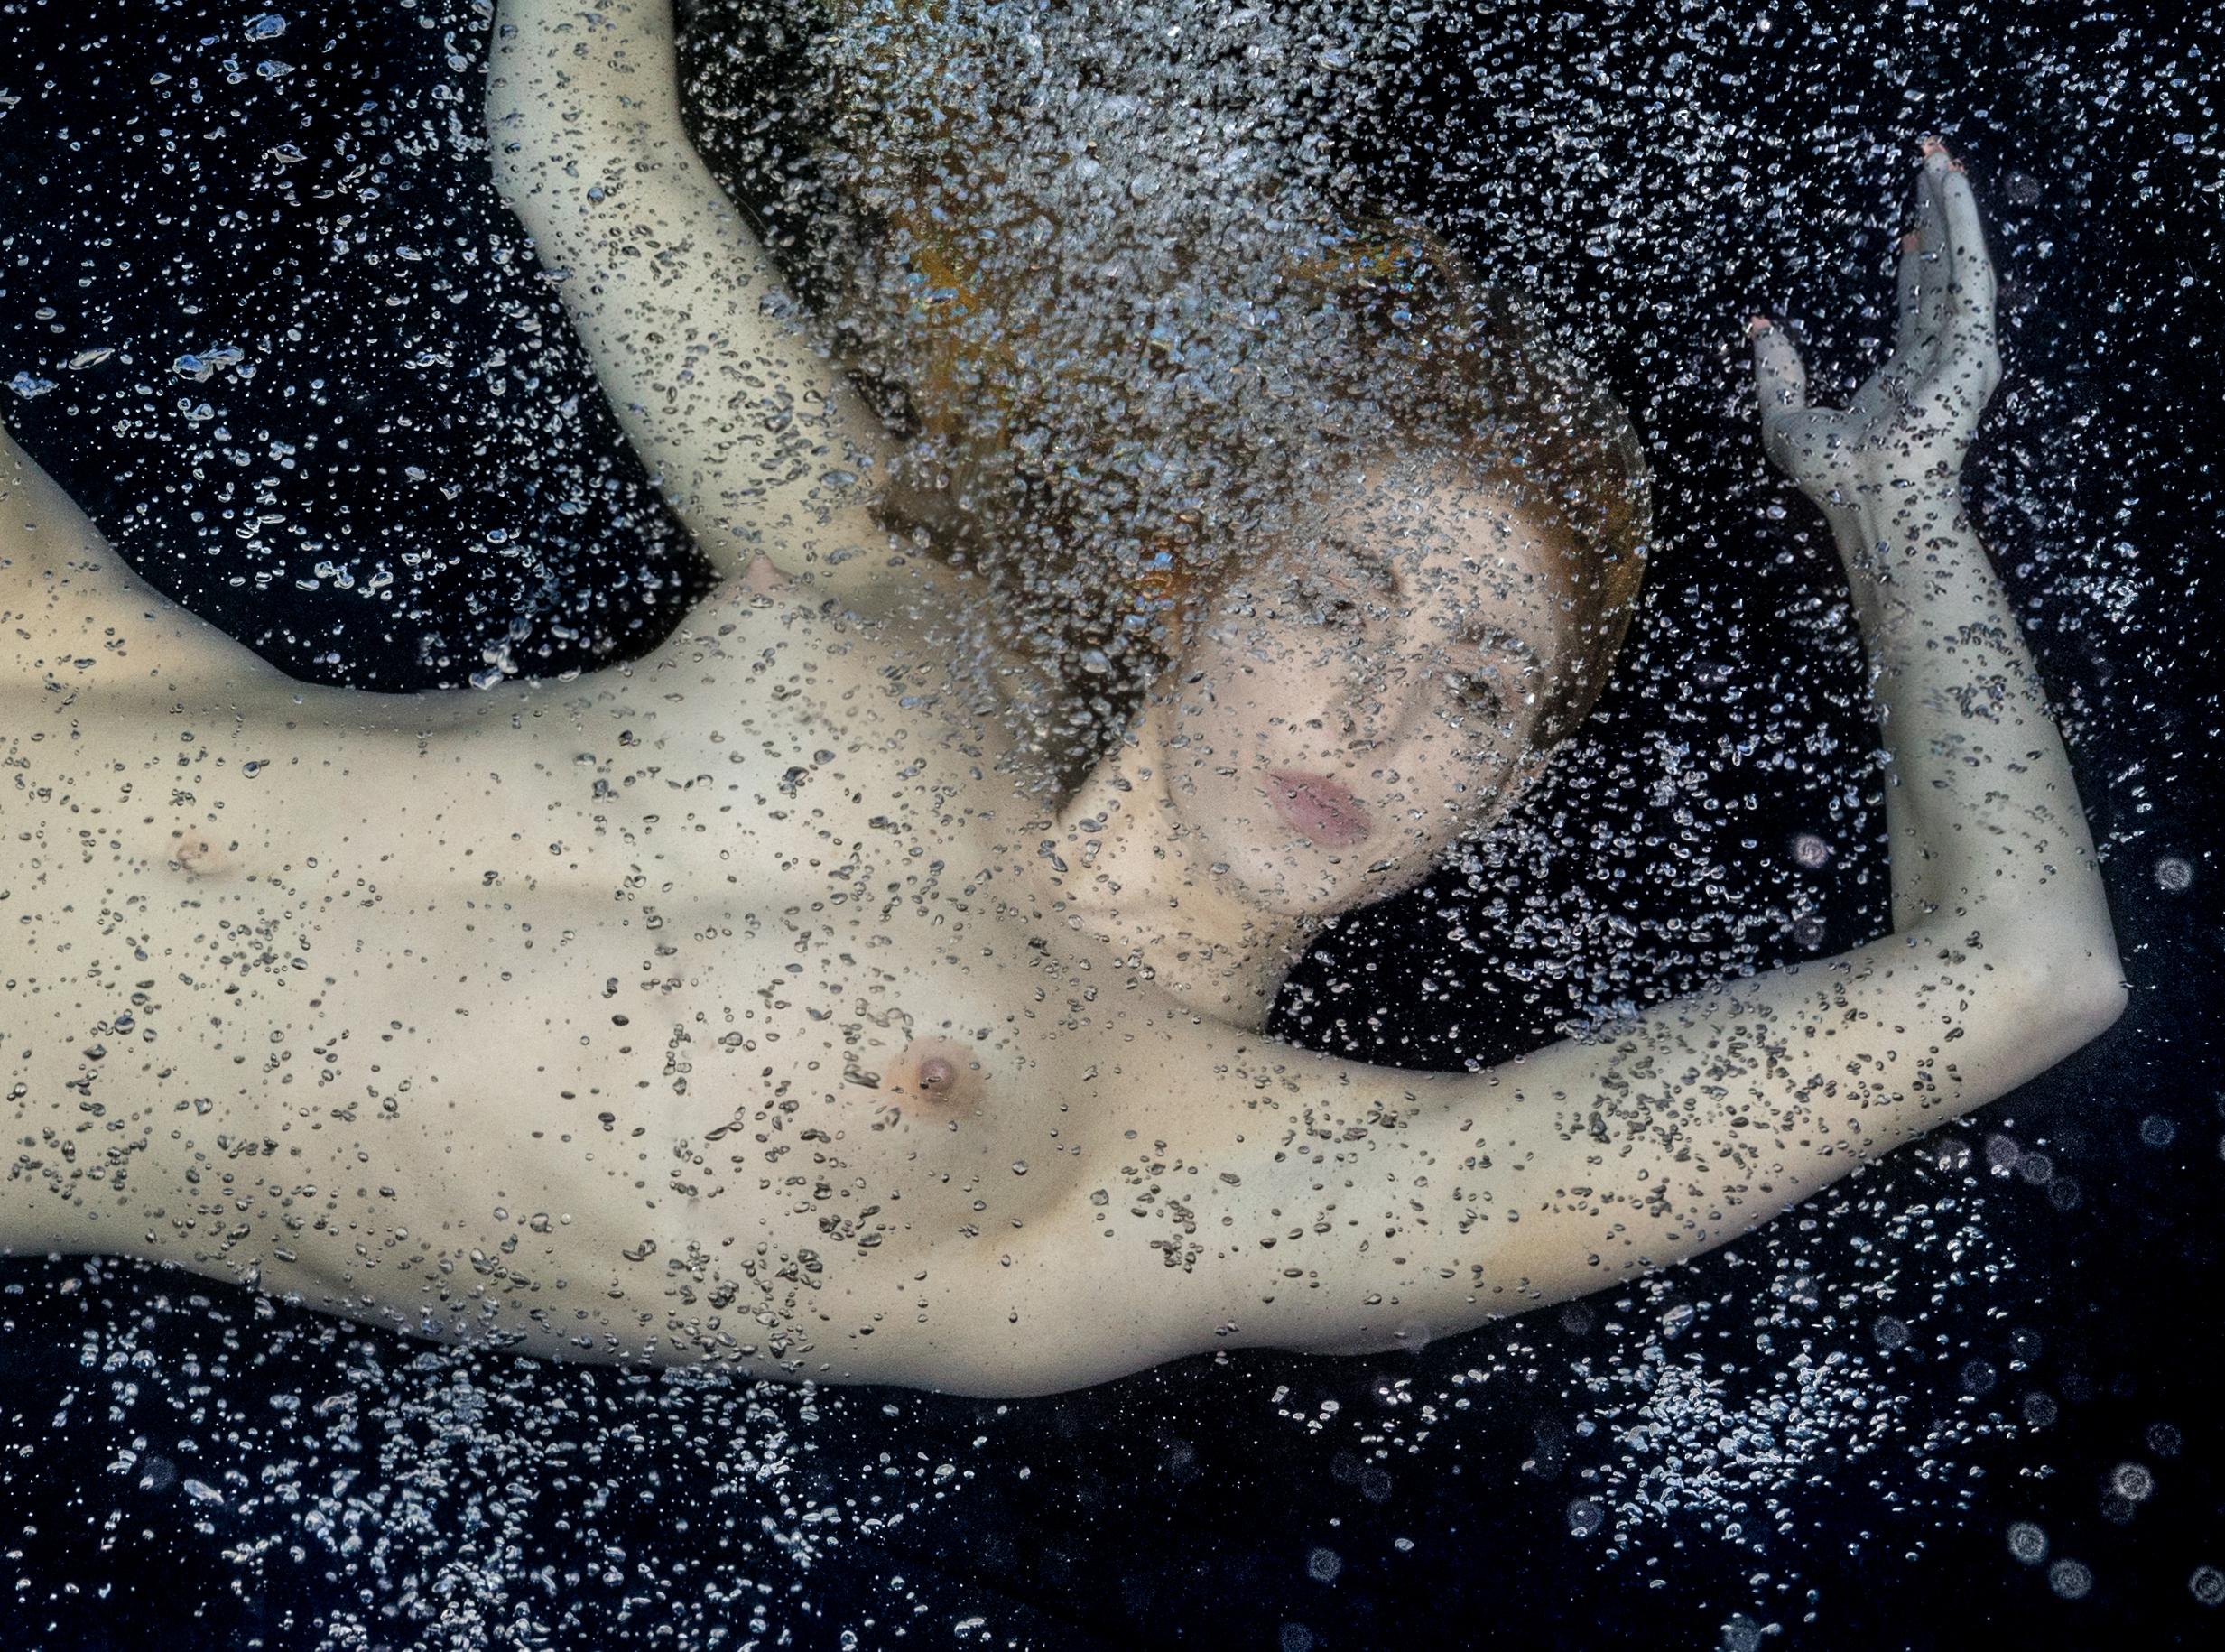 Unterwasser-Nacktfoto einer jungen Frau mit goldenem Haar auf dem Grund eines Schwimmbeckens.  Ihr schöner nackter Körper ist in Luftblasen gehüllt. 

Original-Pigmentdruck in Galeriequalität.  
Limitierte Auflage von 24 Drucken #3
Bildgröße: 23,2